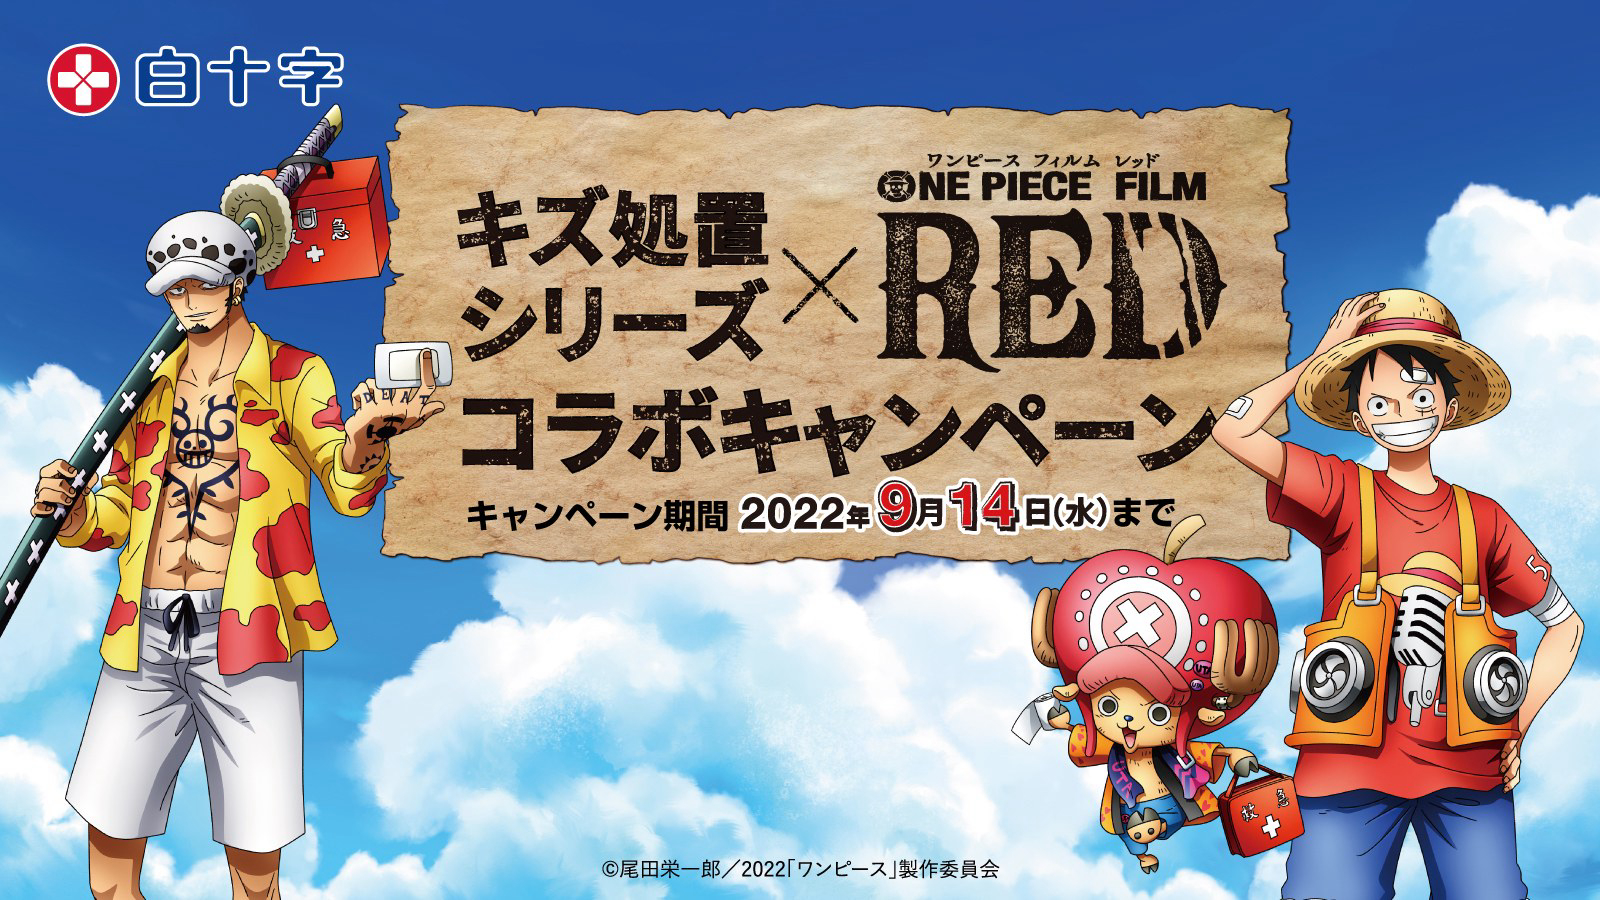 Xem Phim Vua Hải Tặc: Cuộc phiêu lưu đến đảo máy đồng hồ, One Piece Movie 2: Nejimaki-jima no Daibouken, One Piece: Nejimakijima no Bouken, One Piece: Nejimaki Shima no Bouken 2001